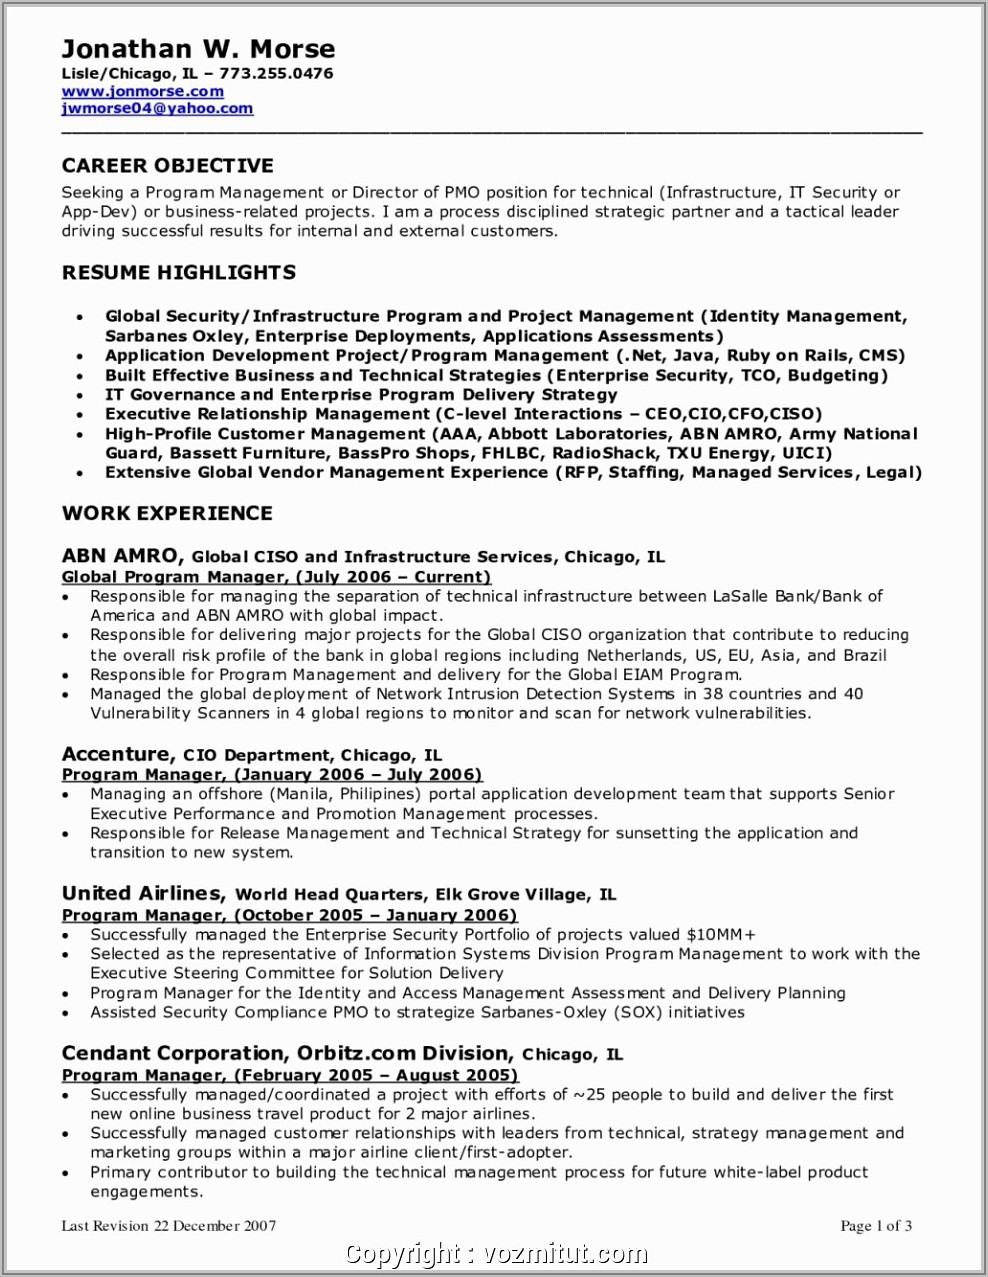 Sample Resume For Nursing Director Position